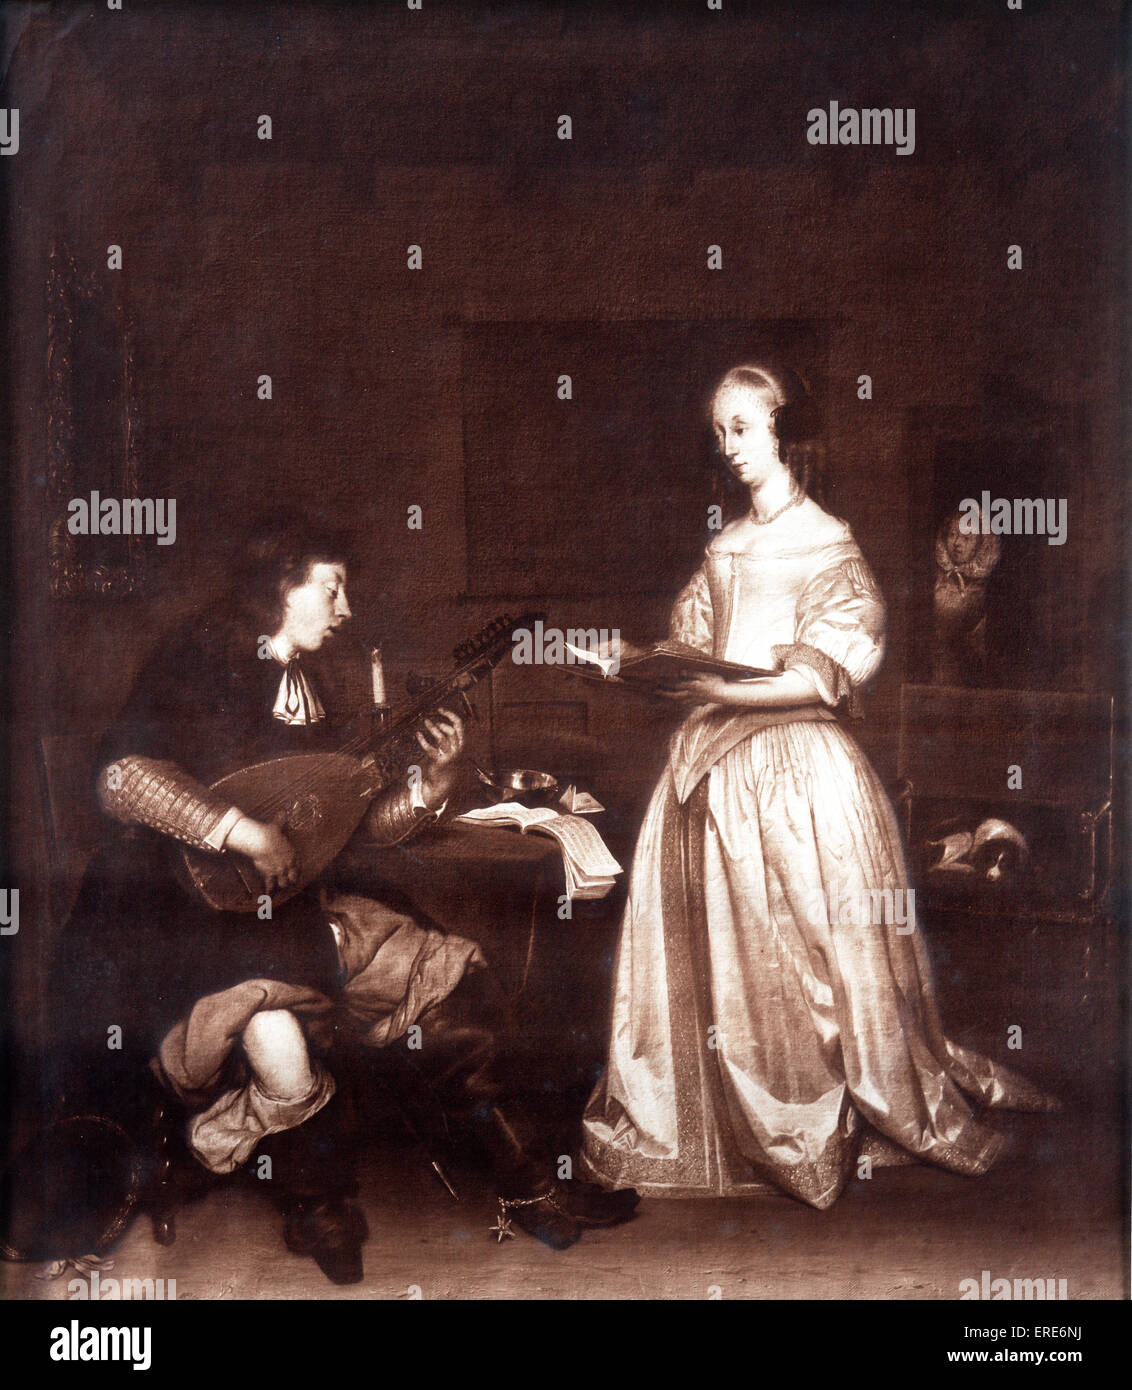 Das Duett: ein Sänger und ein Lautenspieler. Gerard Ter Borch 1617-1681. Niederländischen Barock Ära Maler.    Sepia Reproduktion. Stockfoto